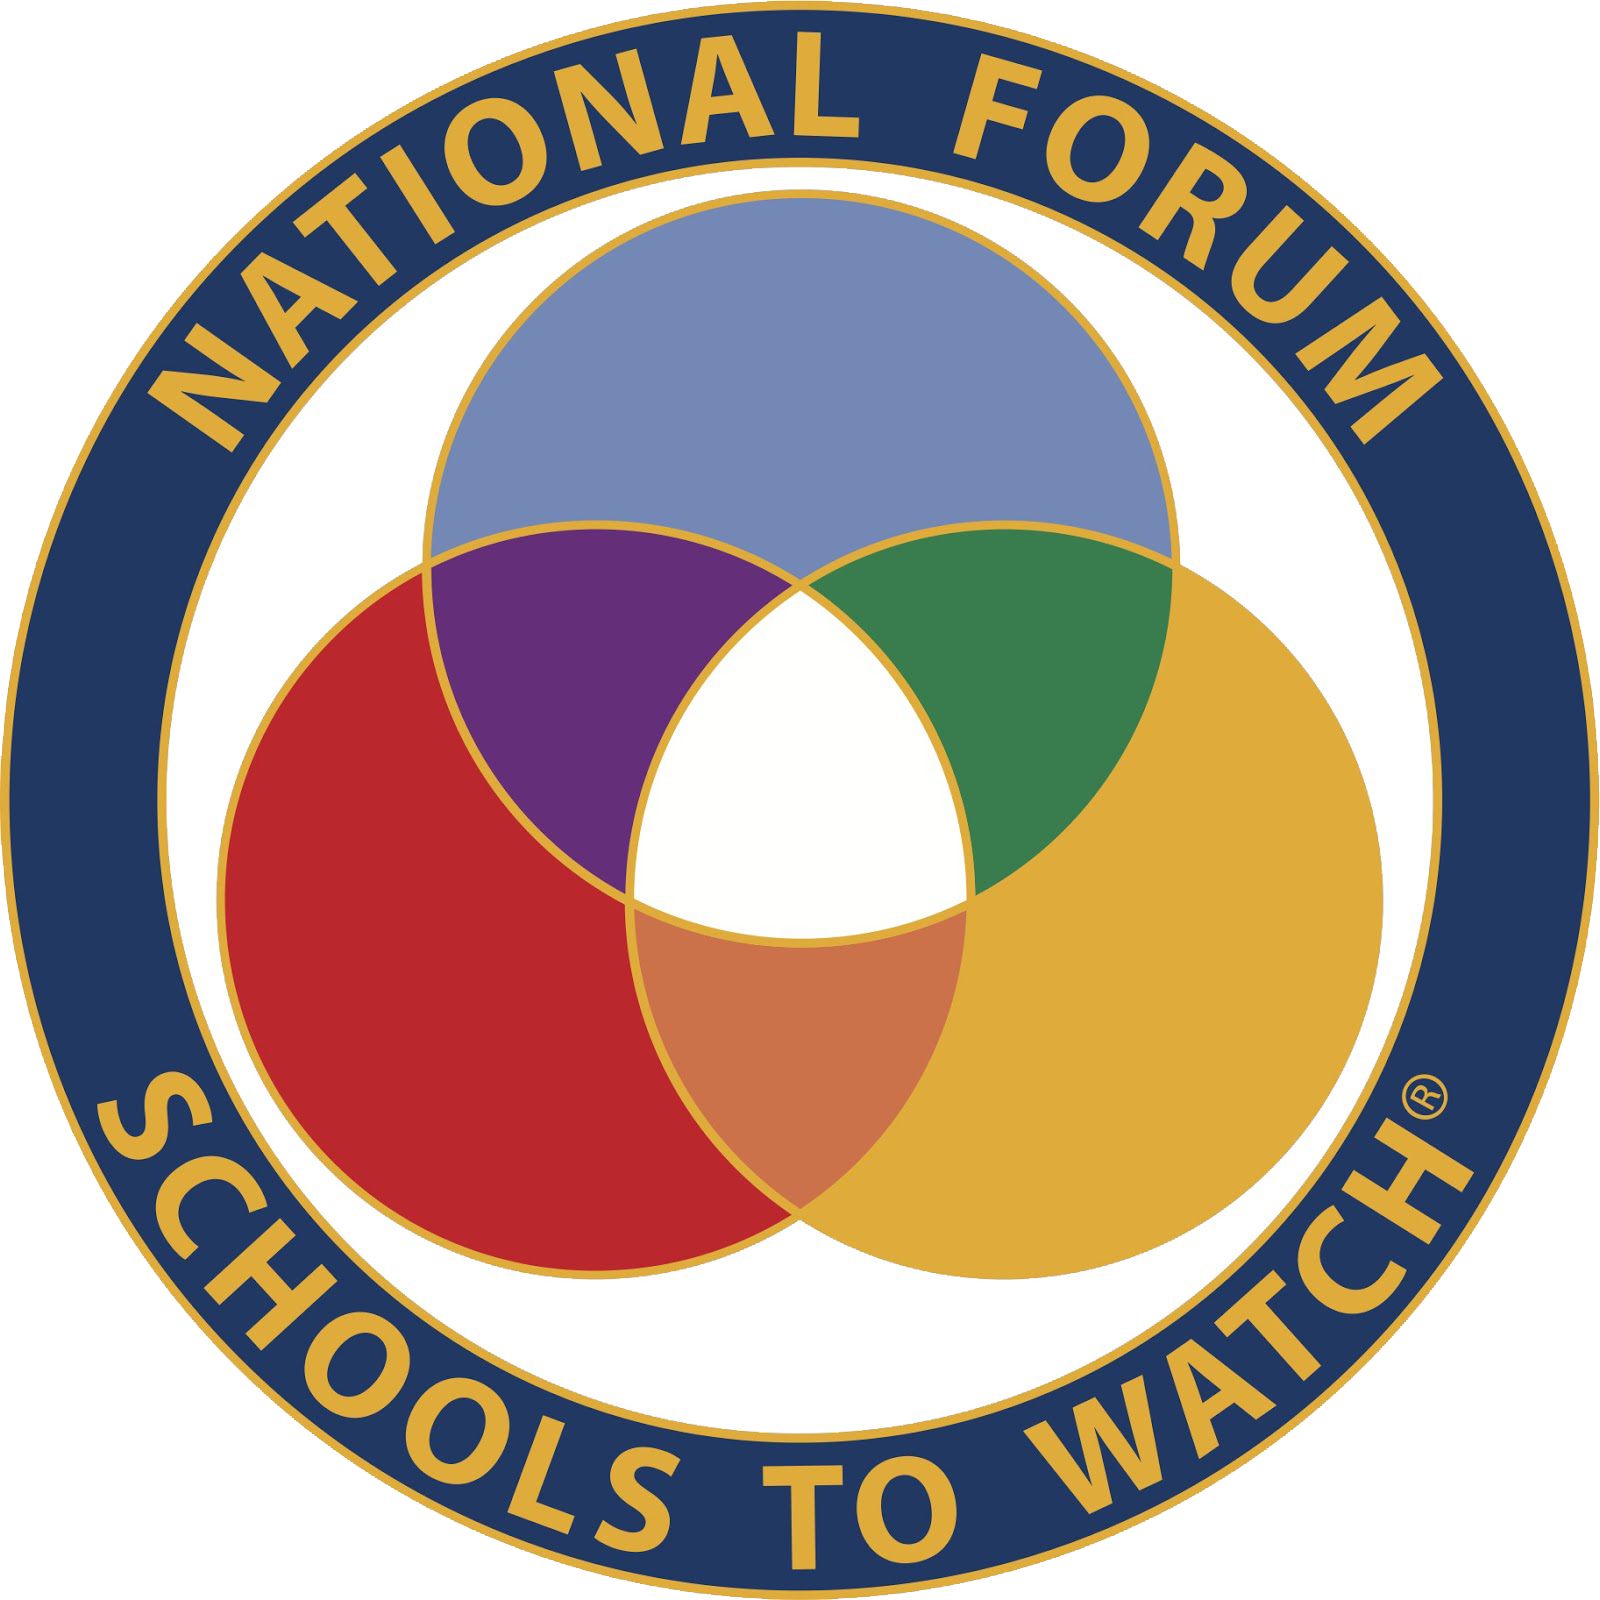 National Forum Schoolsto Watch Logo